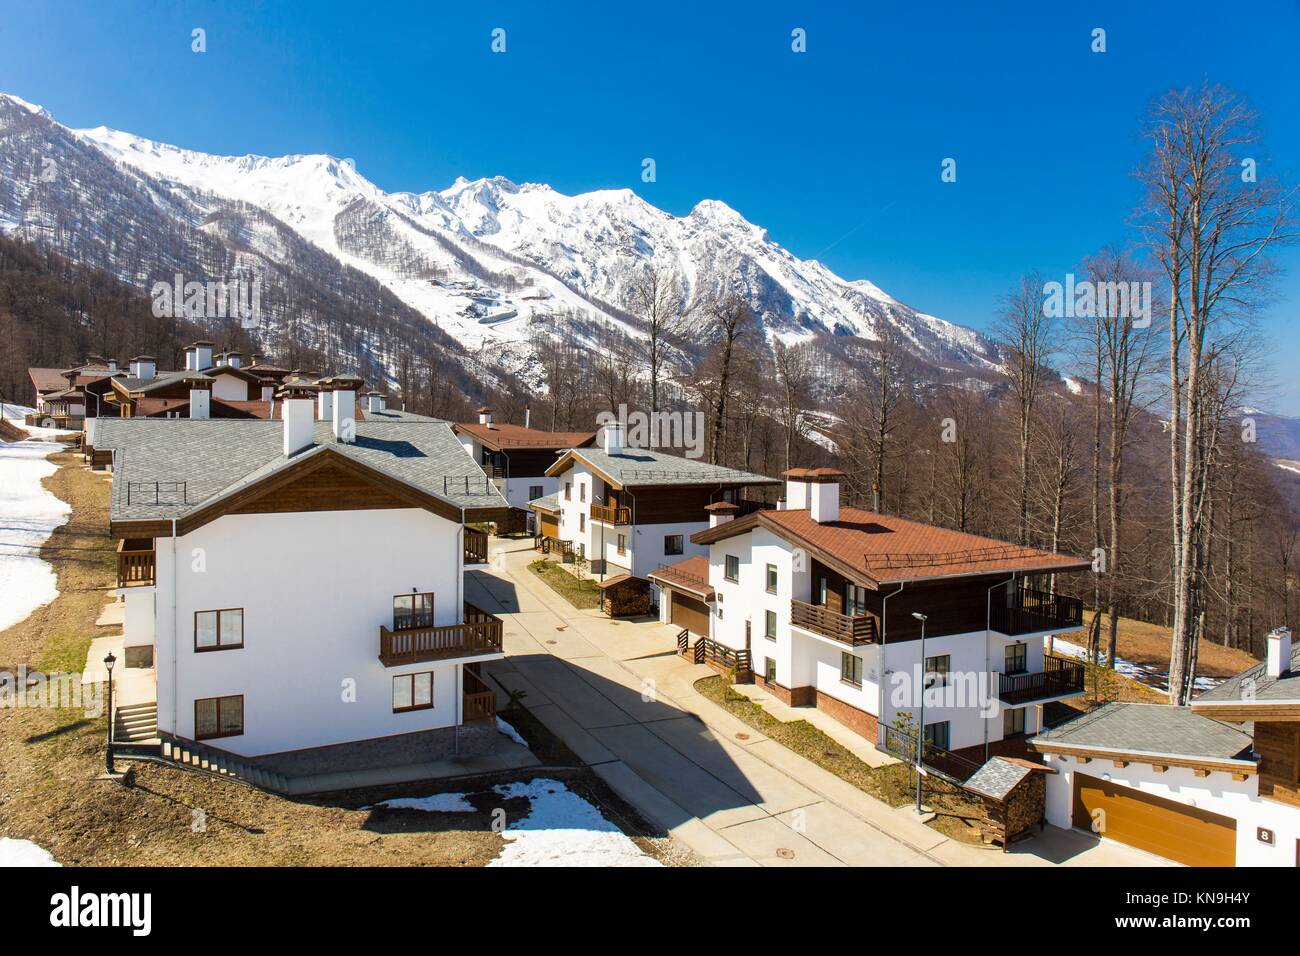 Mountain Ski Resort Rosa Khutor avec chalets sur fond des montagnes enneigées. Banque D'Images